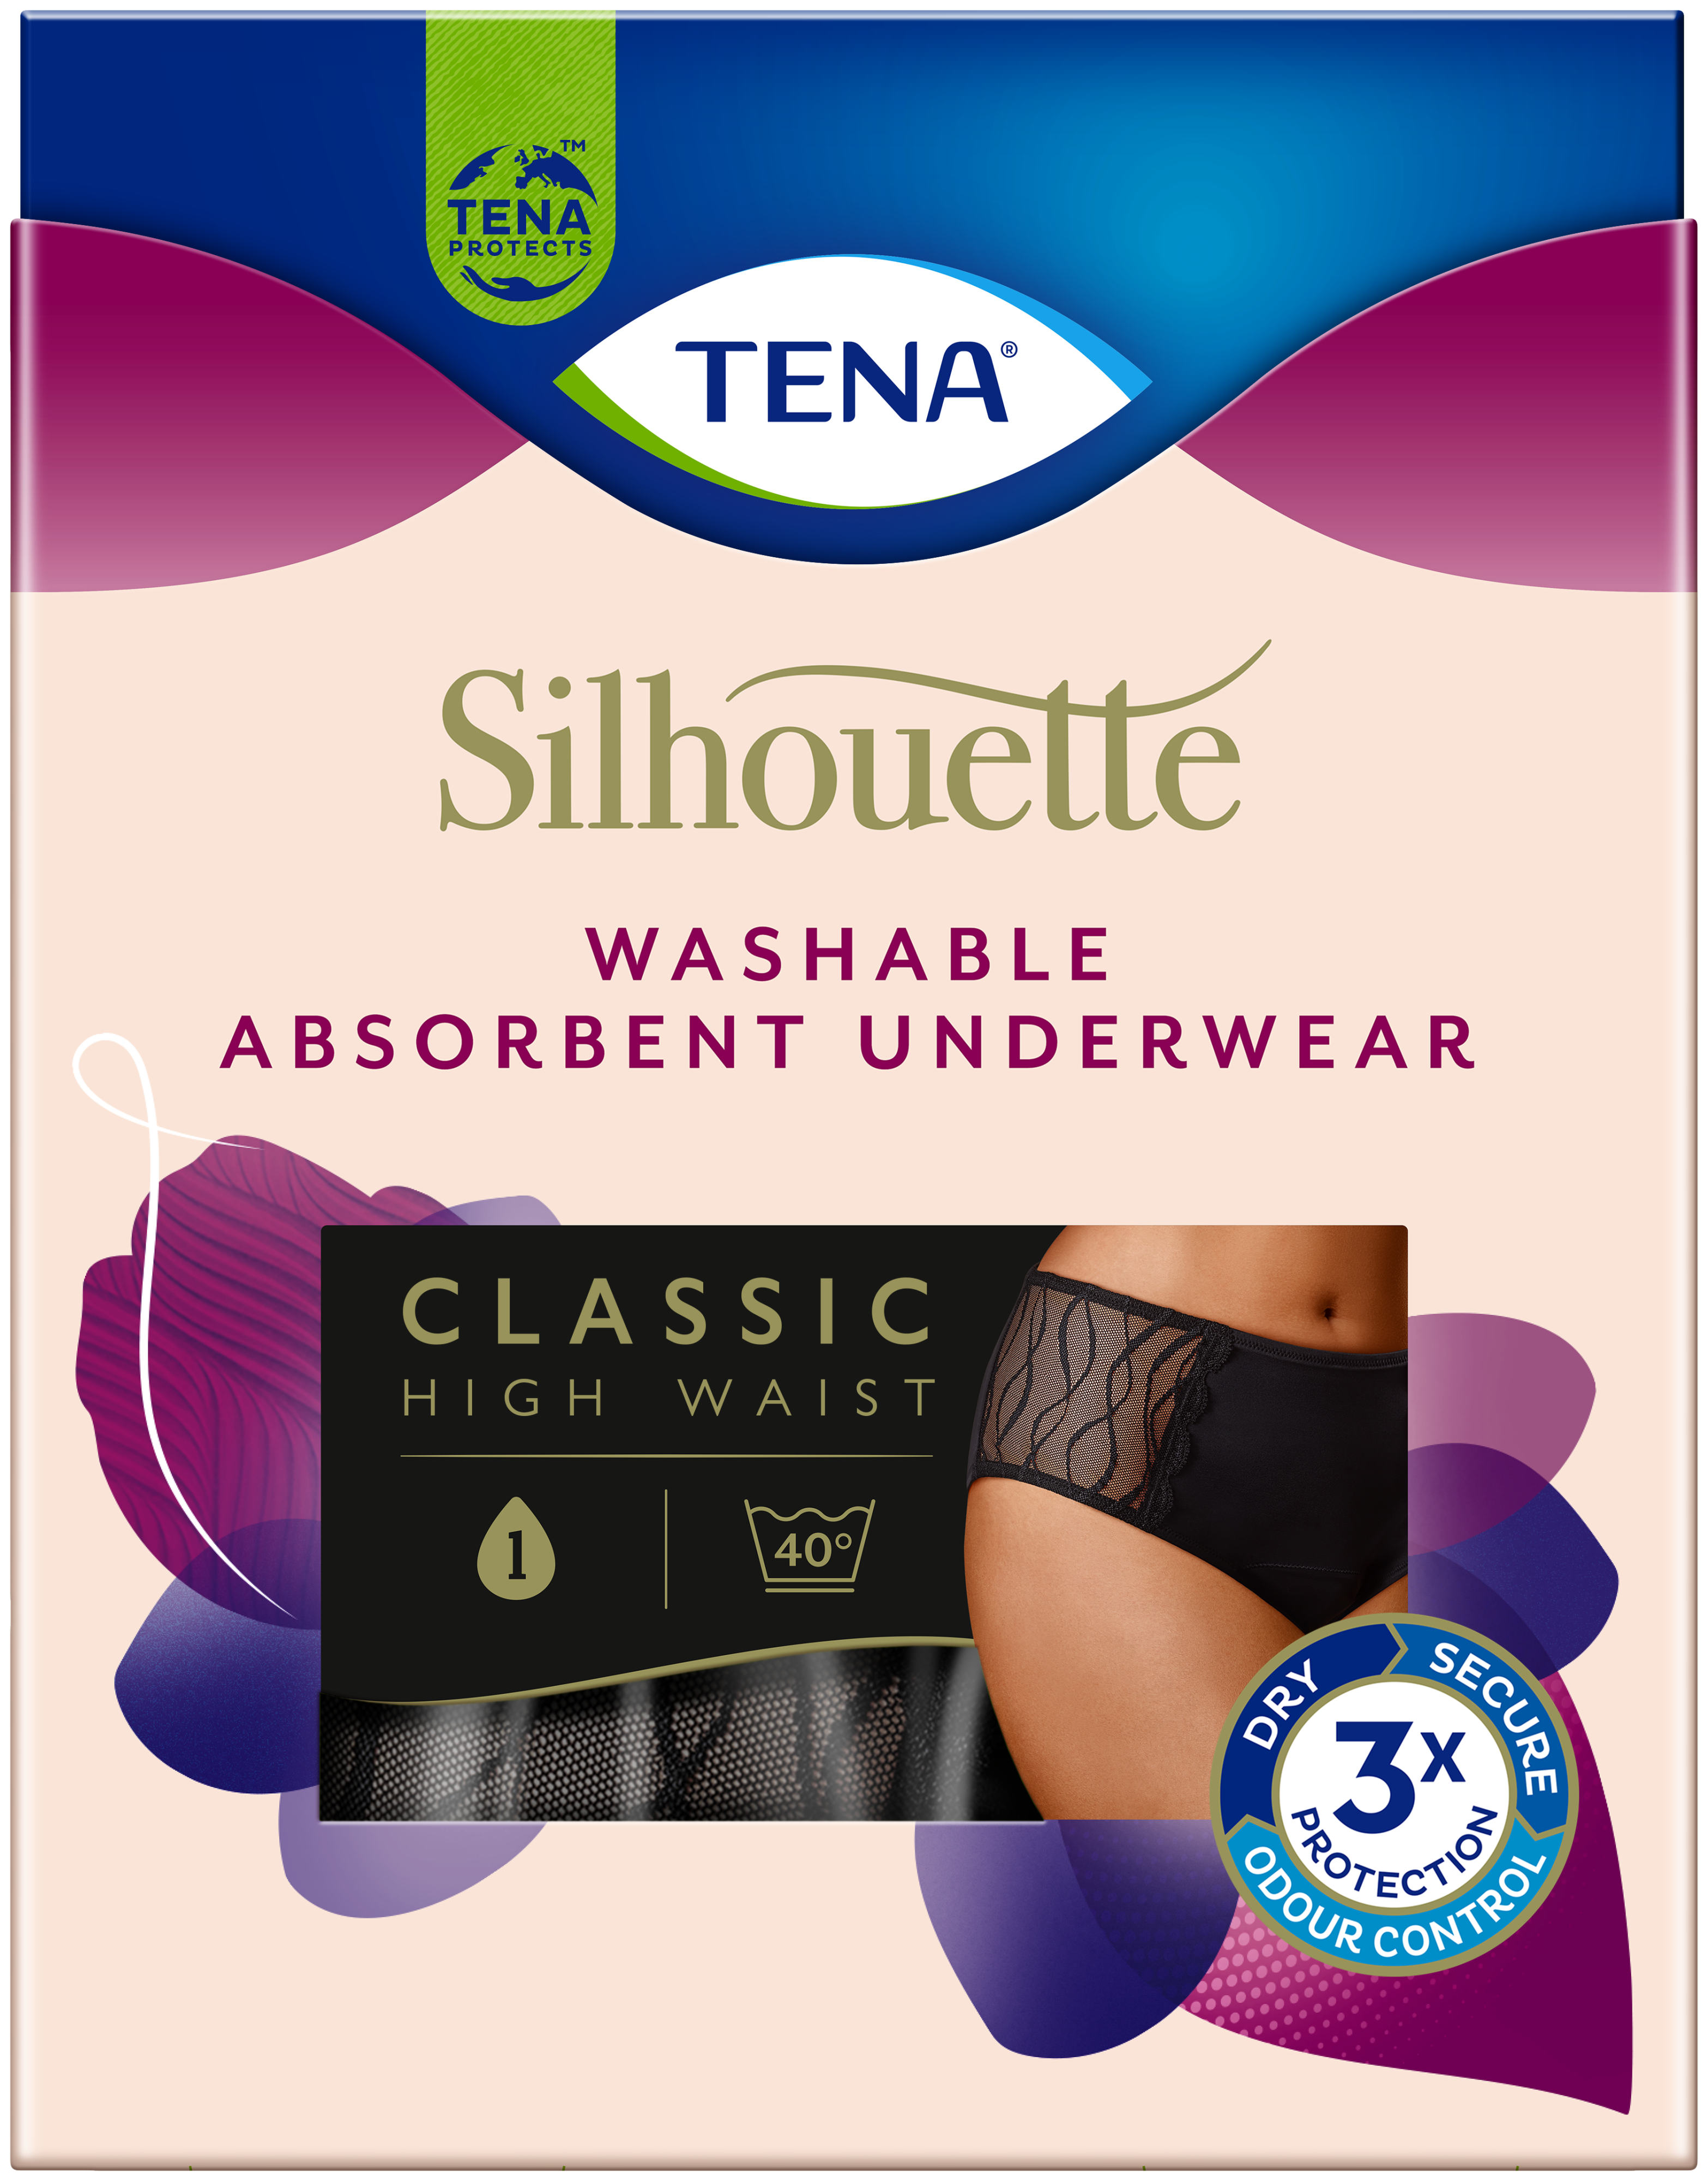 TENA Silhouette tvättbara absorberande trosor | Classic – för kvinnor med små urinläckage